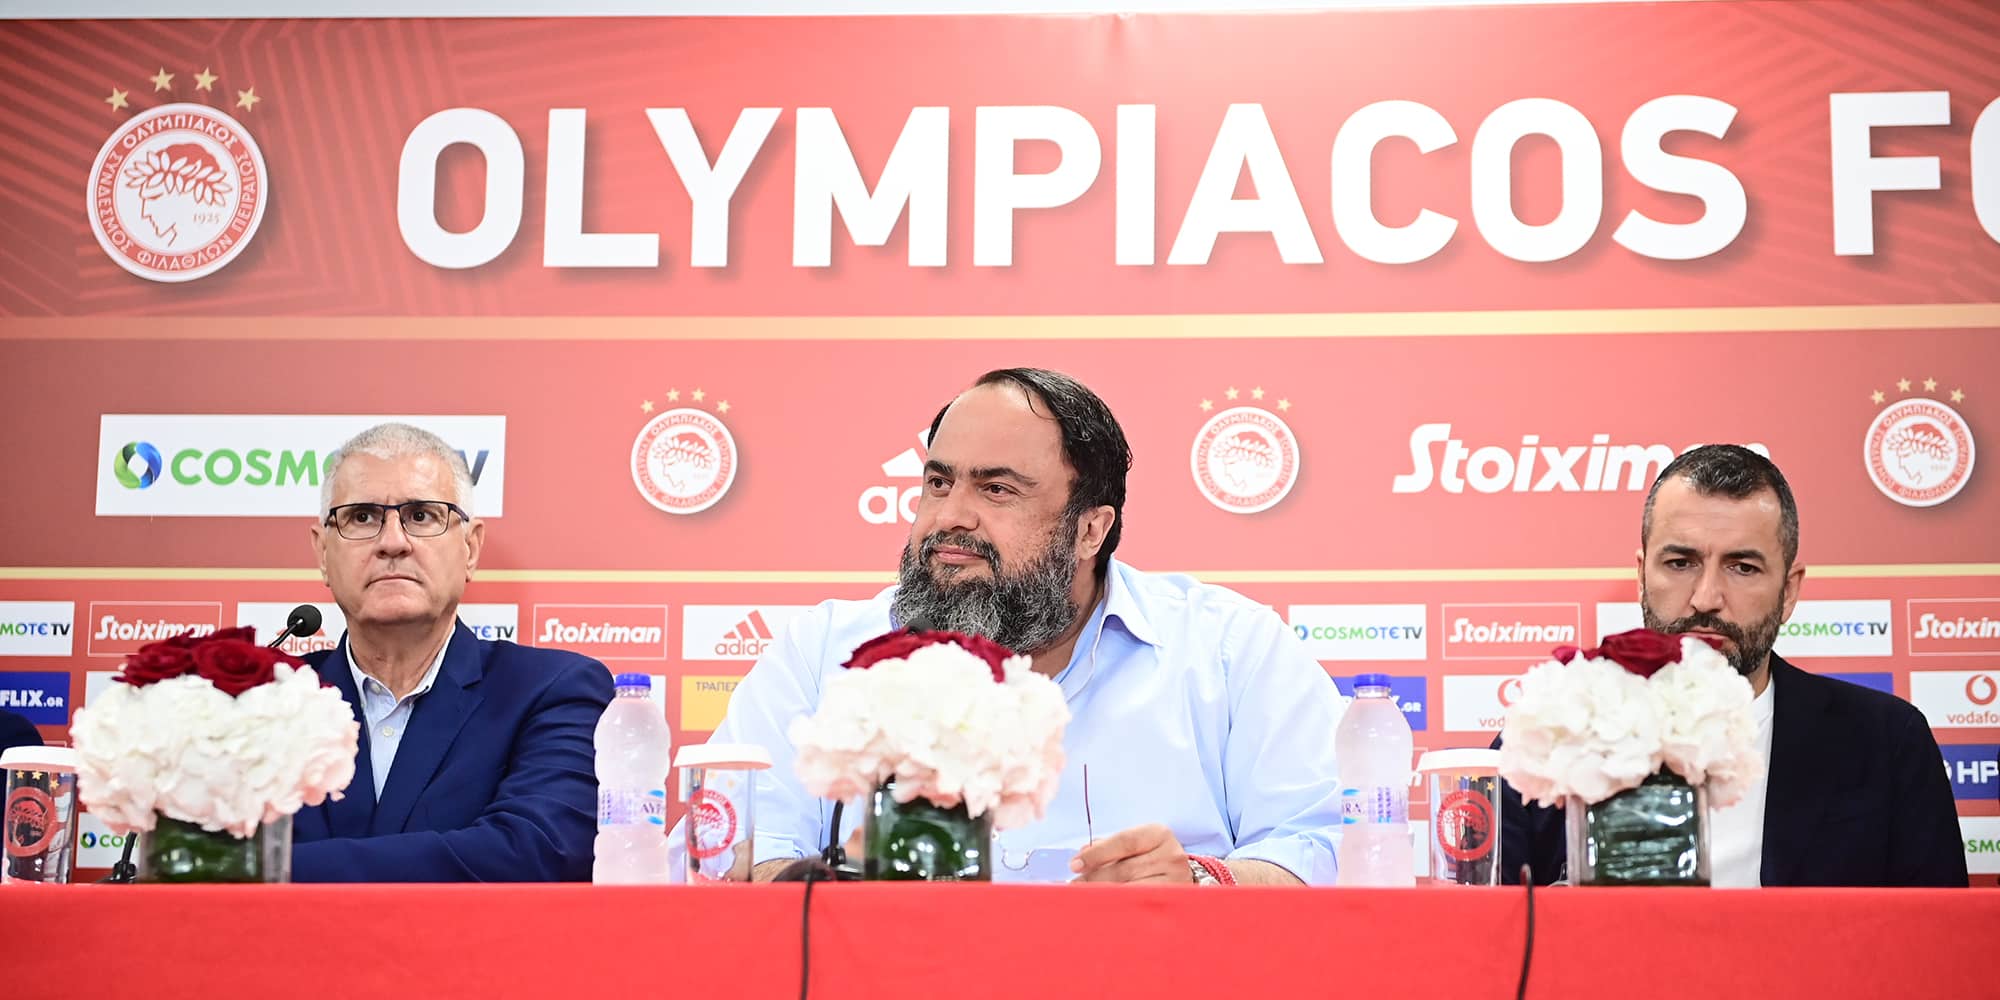 Ο νέος προπονητής του Ολυμπιακού, Ντιέγκο Μαρτίνεθ (δεξιά). με τον πρόεδρο της ΠΑΕ Βαγγέλη Μαρινάκη και τον αθλητικό διευθυντή Αντόνιο Κορδόν (αριστερά)